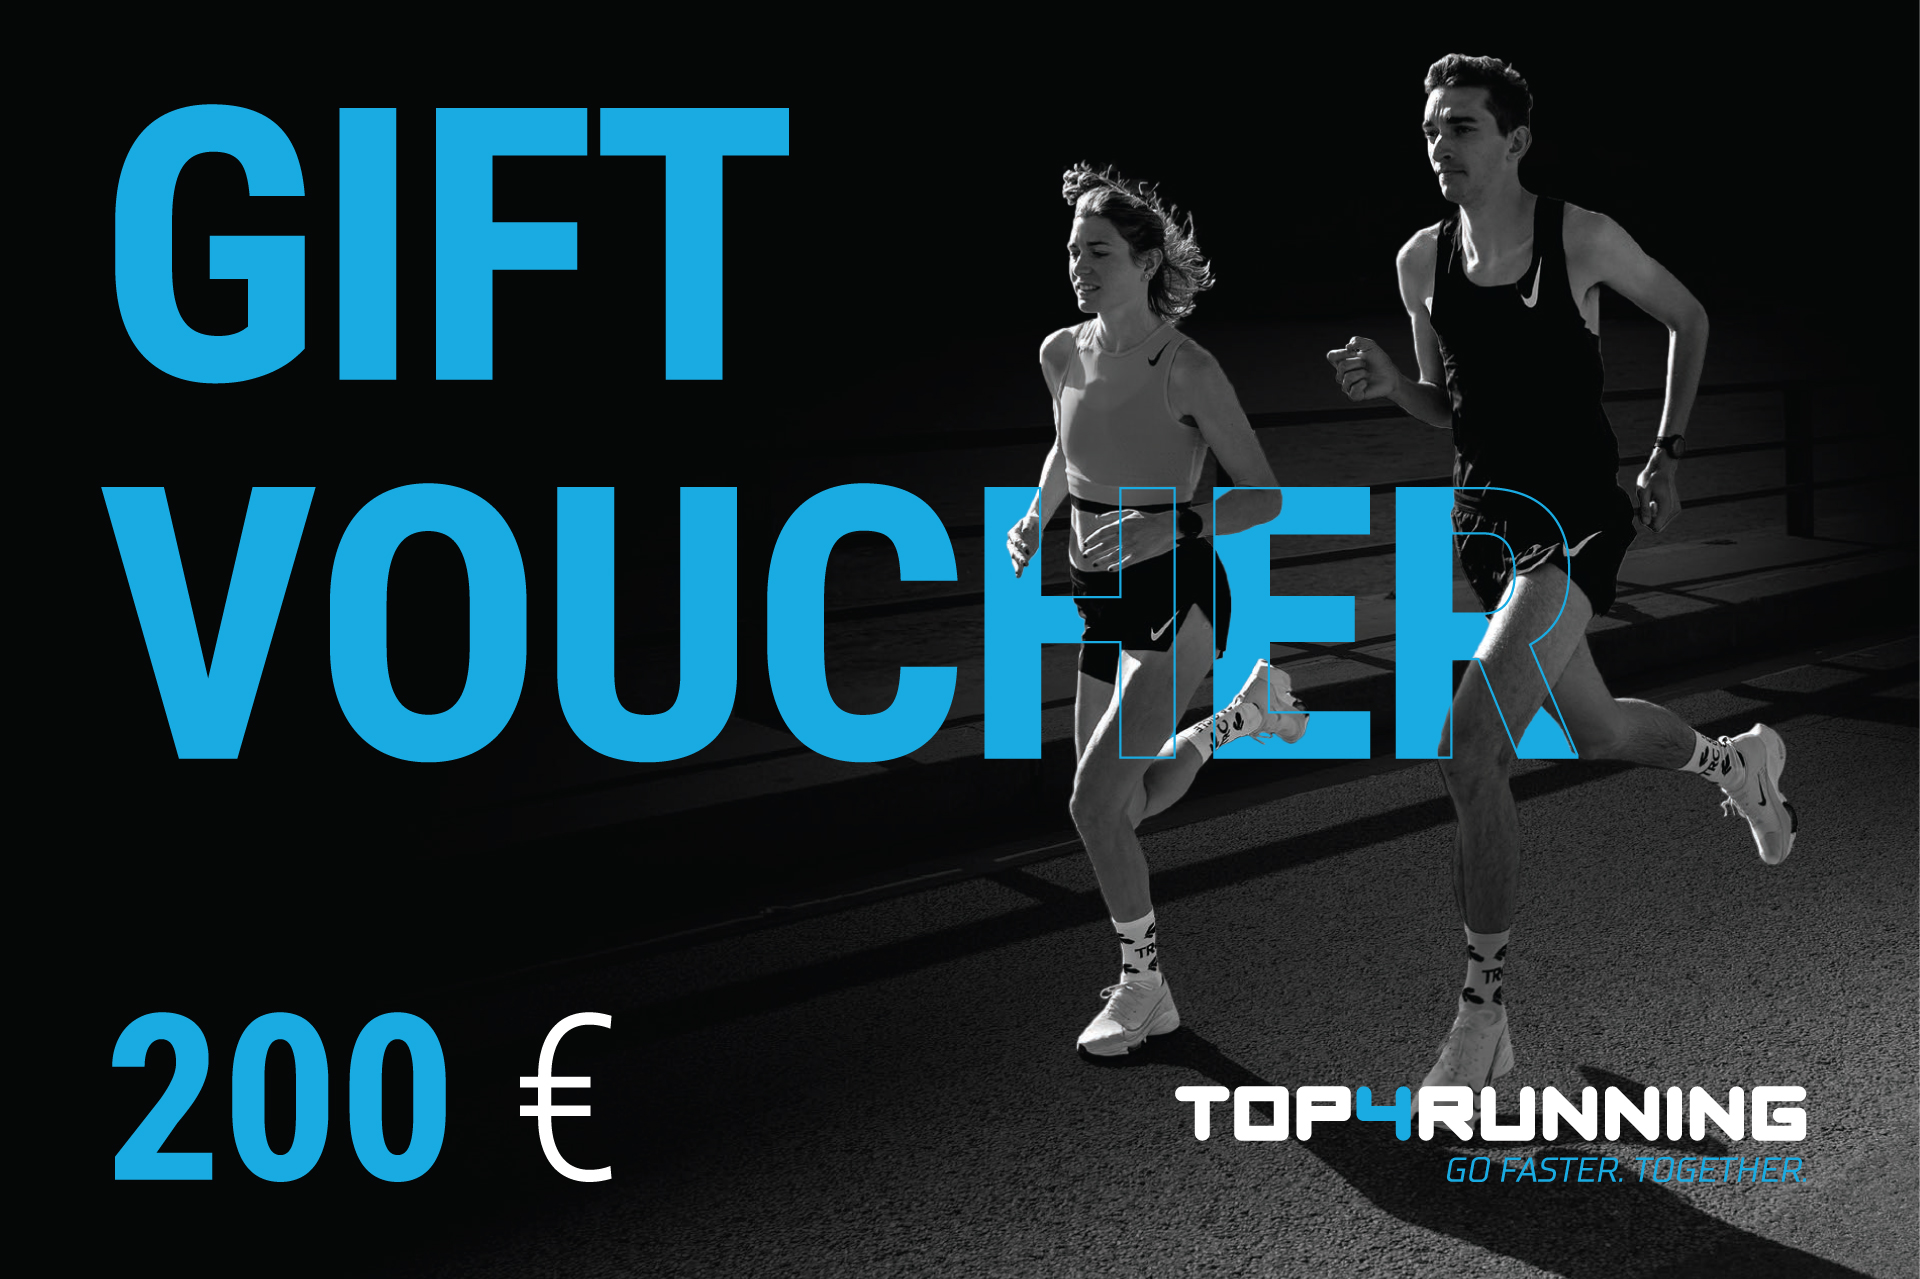 Top4running gift voucher worth 200€